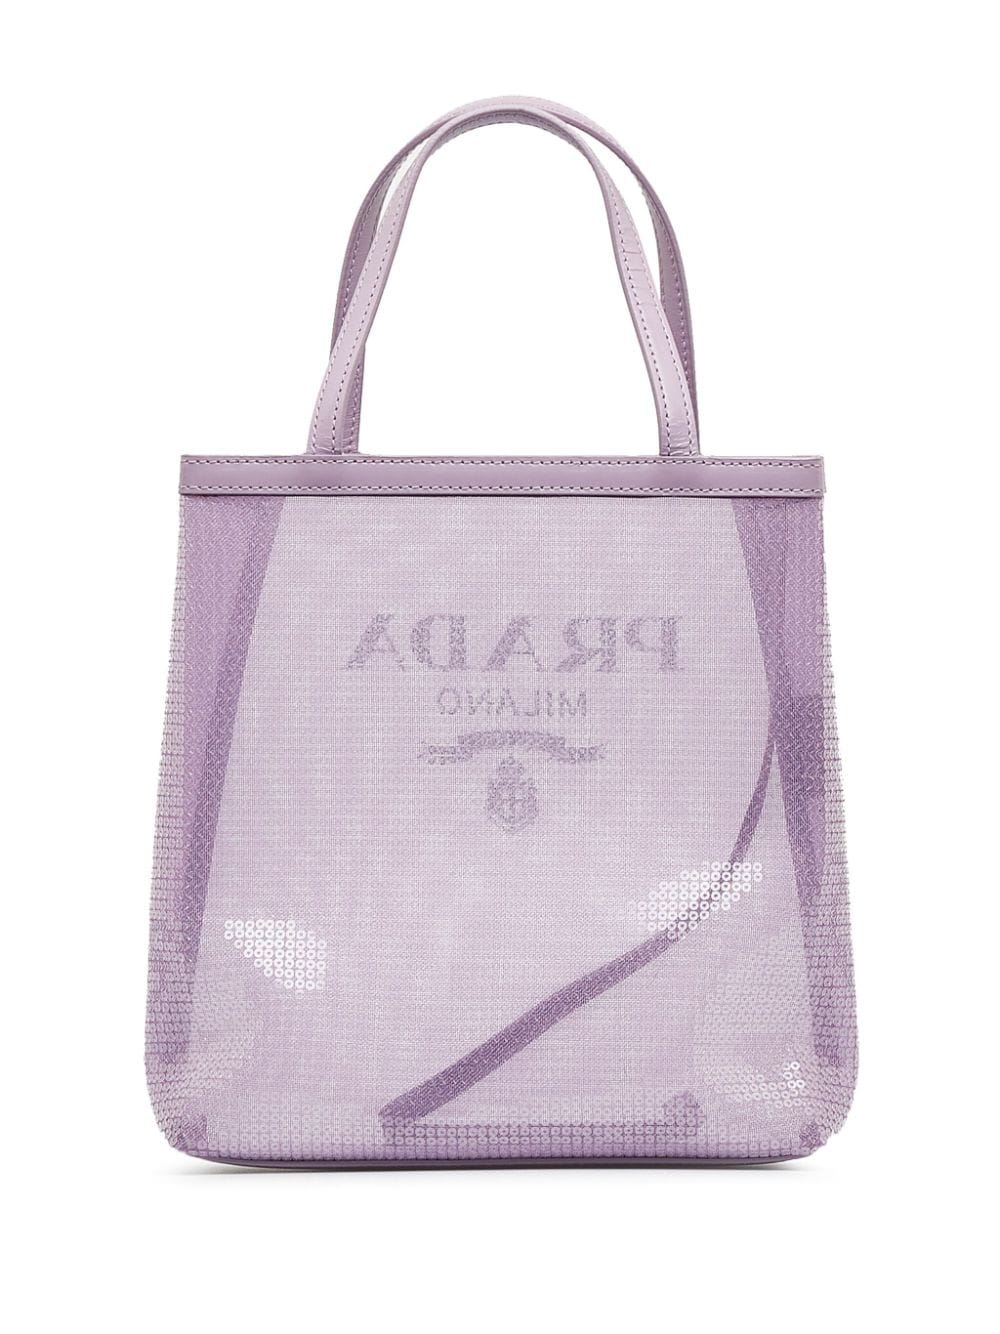 Prada Pre-owned logo-print Mesh Tote Bag - Purple